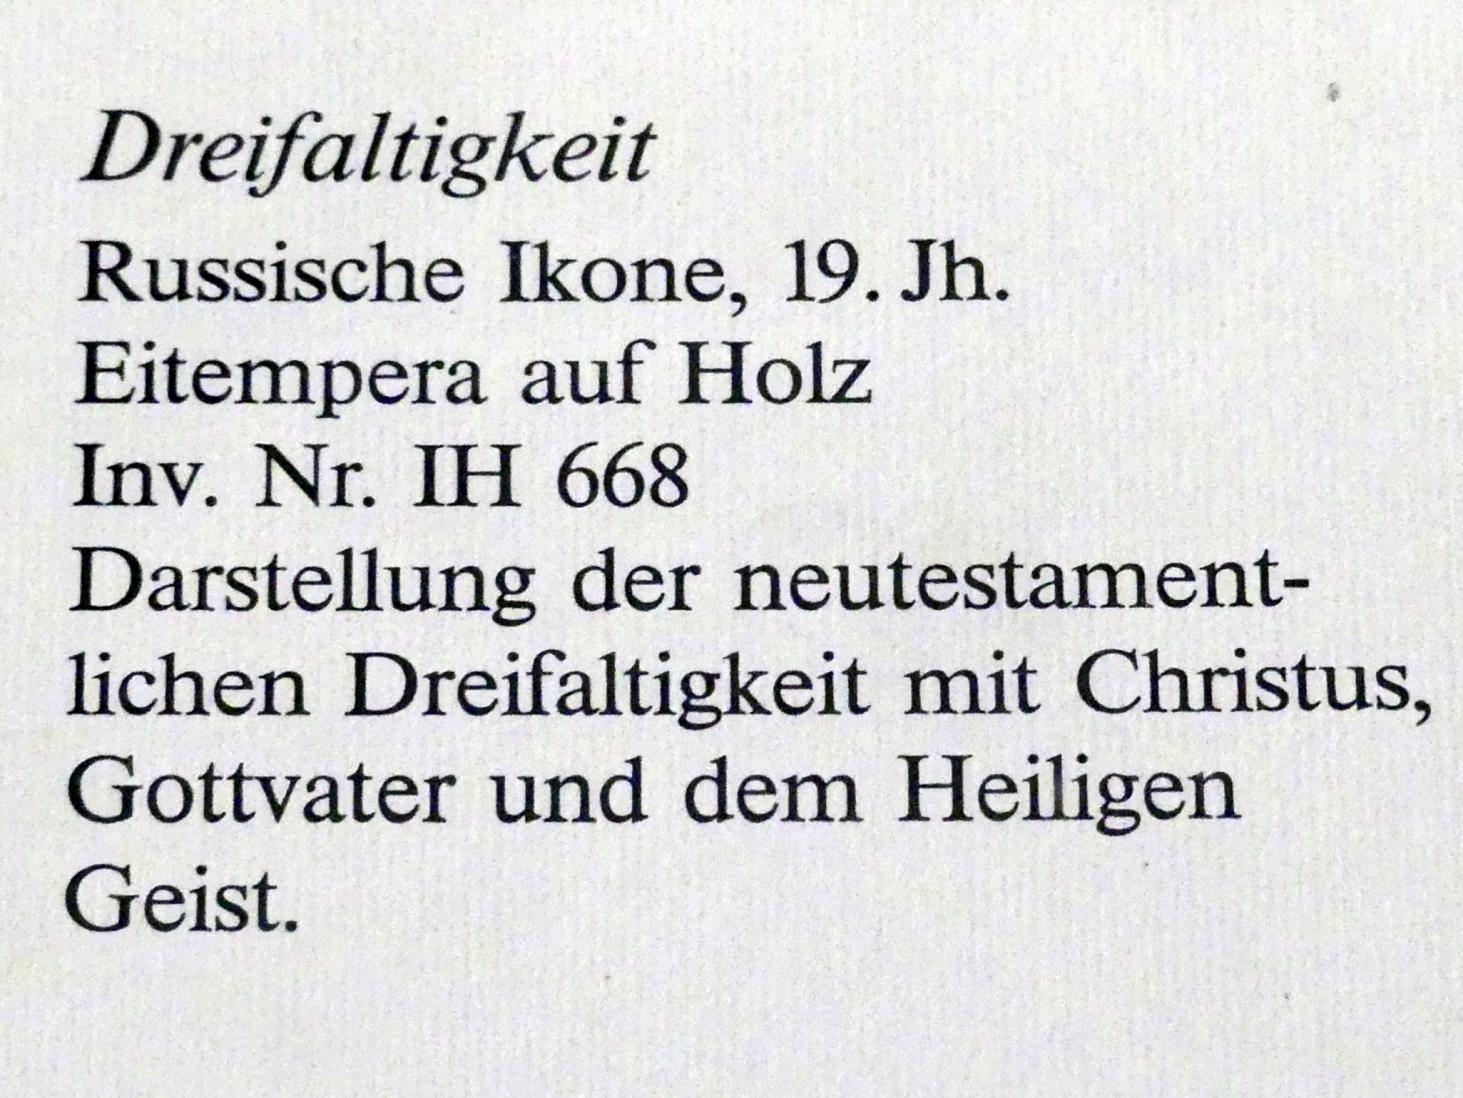 Dreifaltigkeit, Frankfurt am Main, Ikonen-Museum, Erdgeschoss, 19. Jhd., Bild 2/2